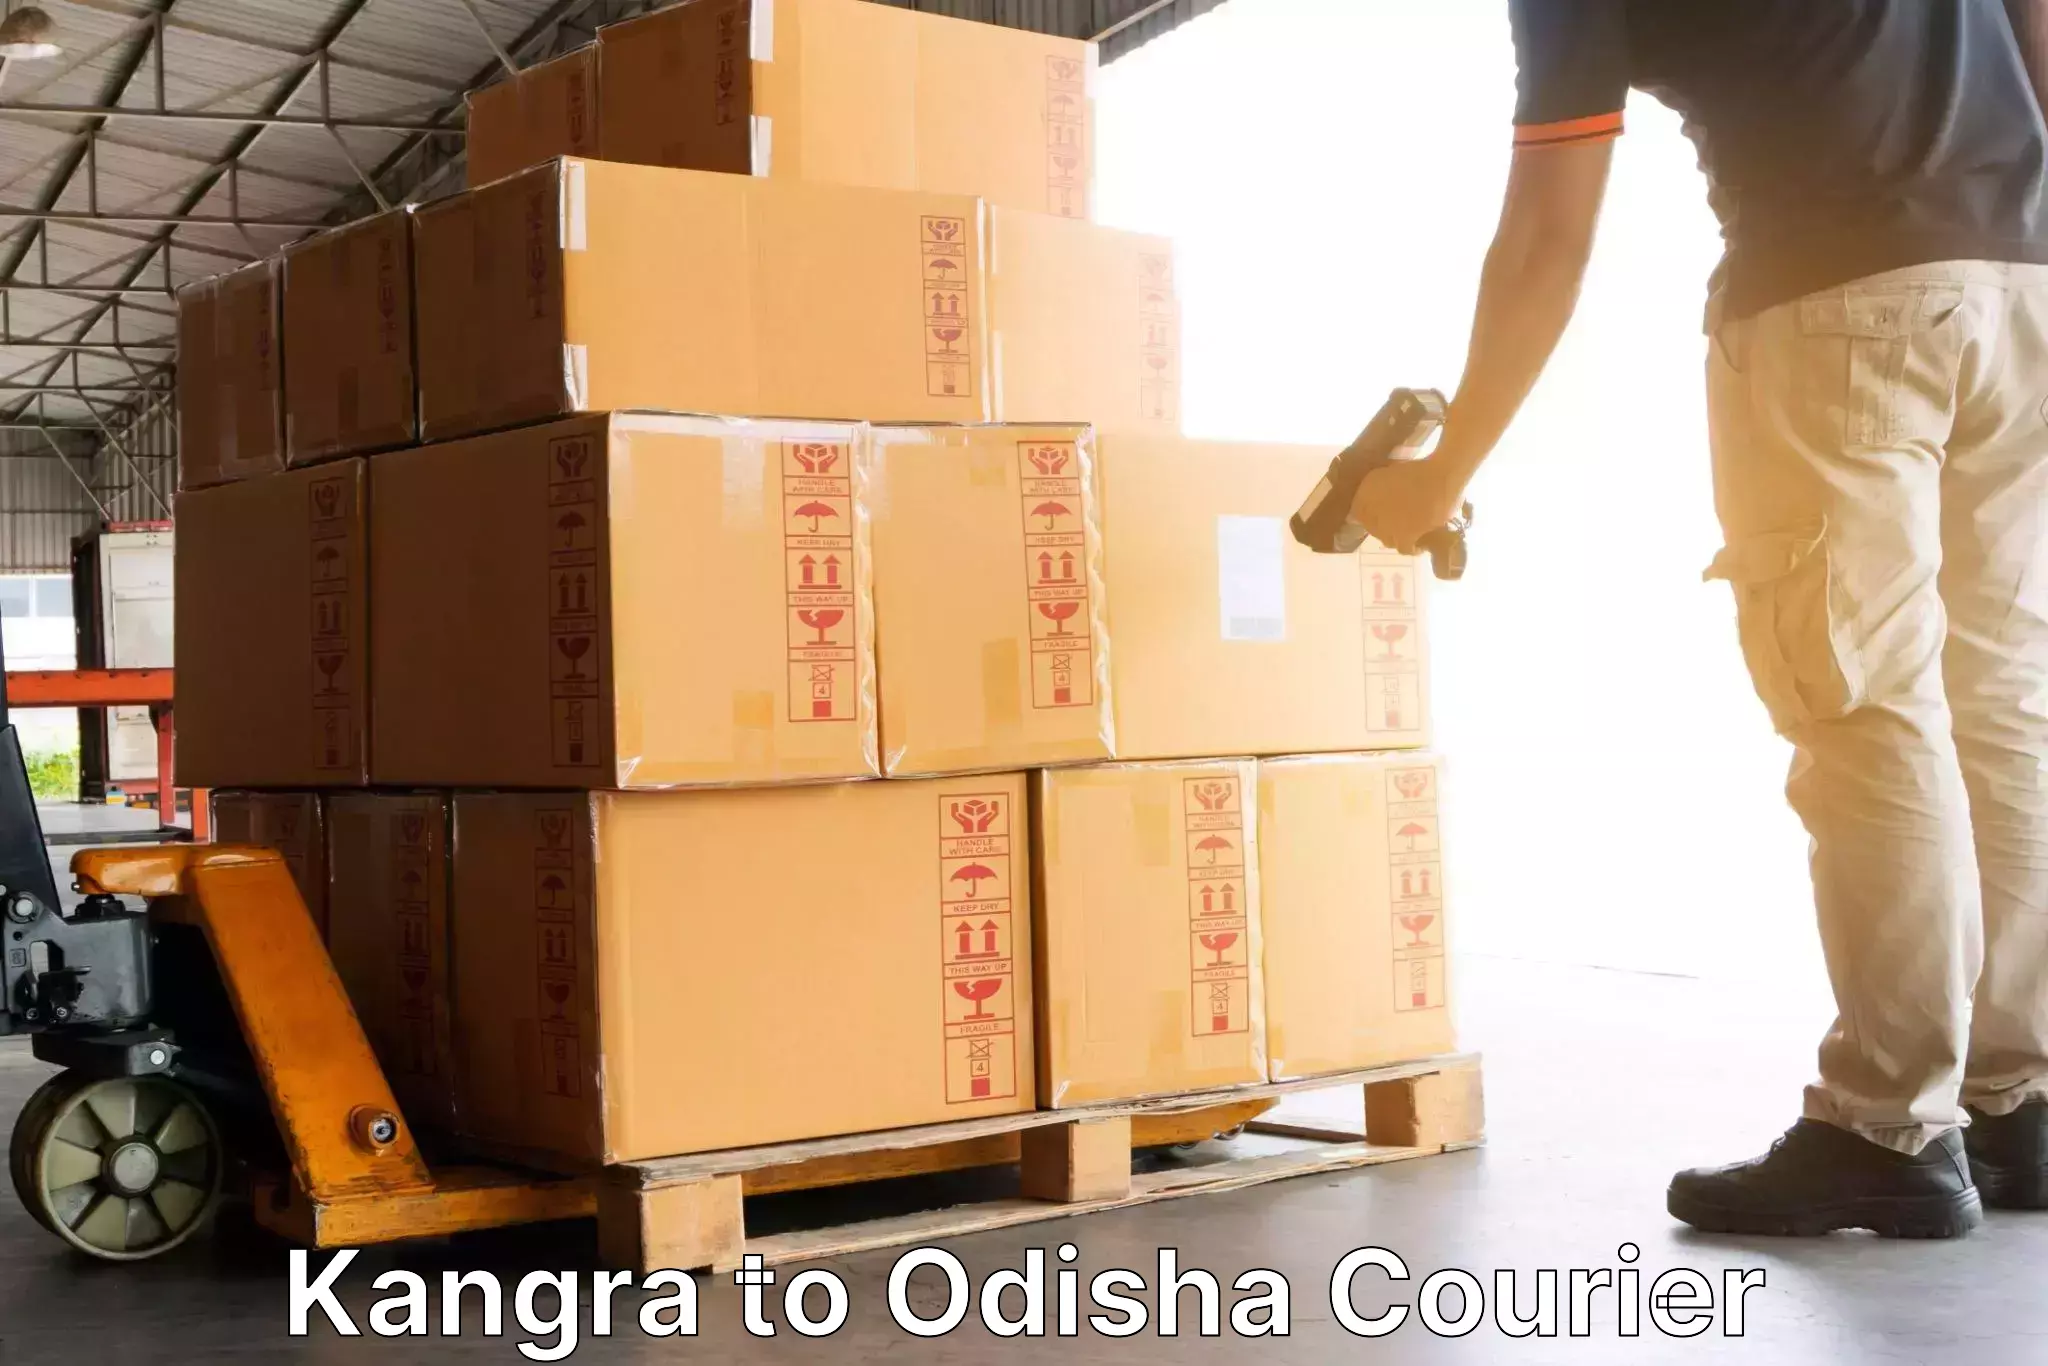 International parcel service Kangra to Raruan